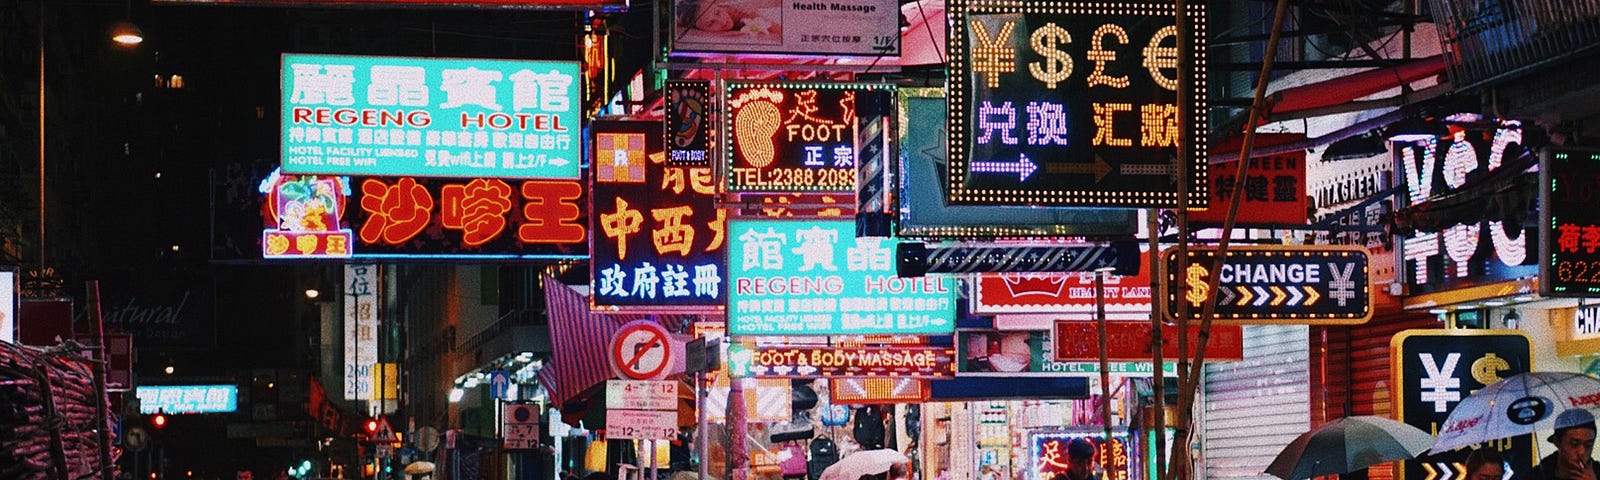 Hong Kong’s well-lit night market